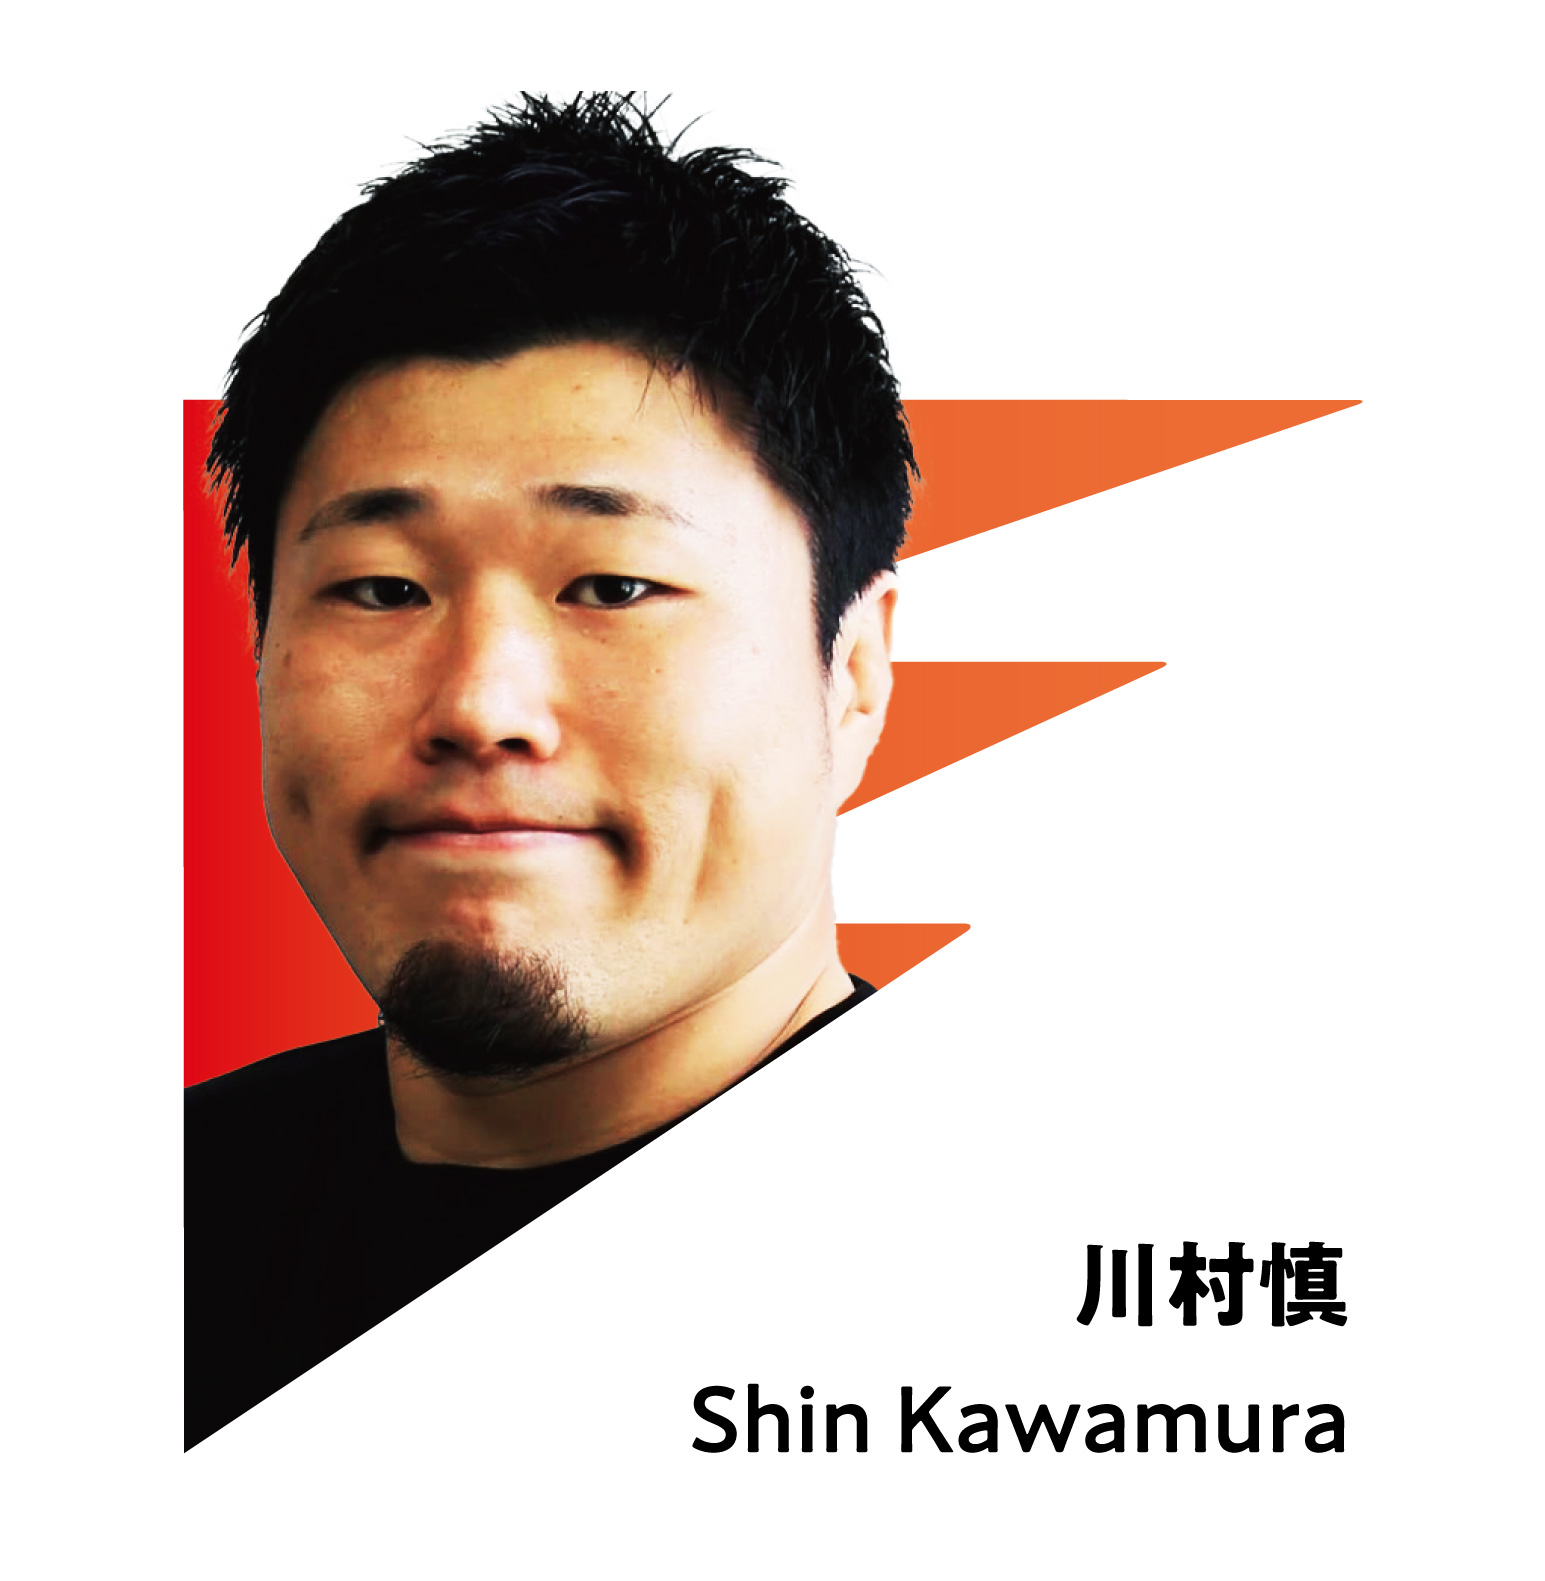 SHIN KAWAMURA